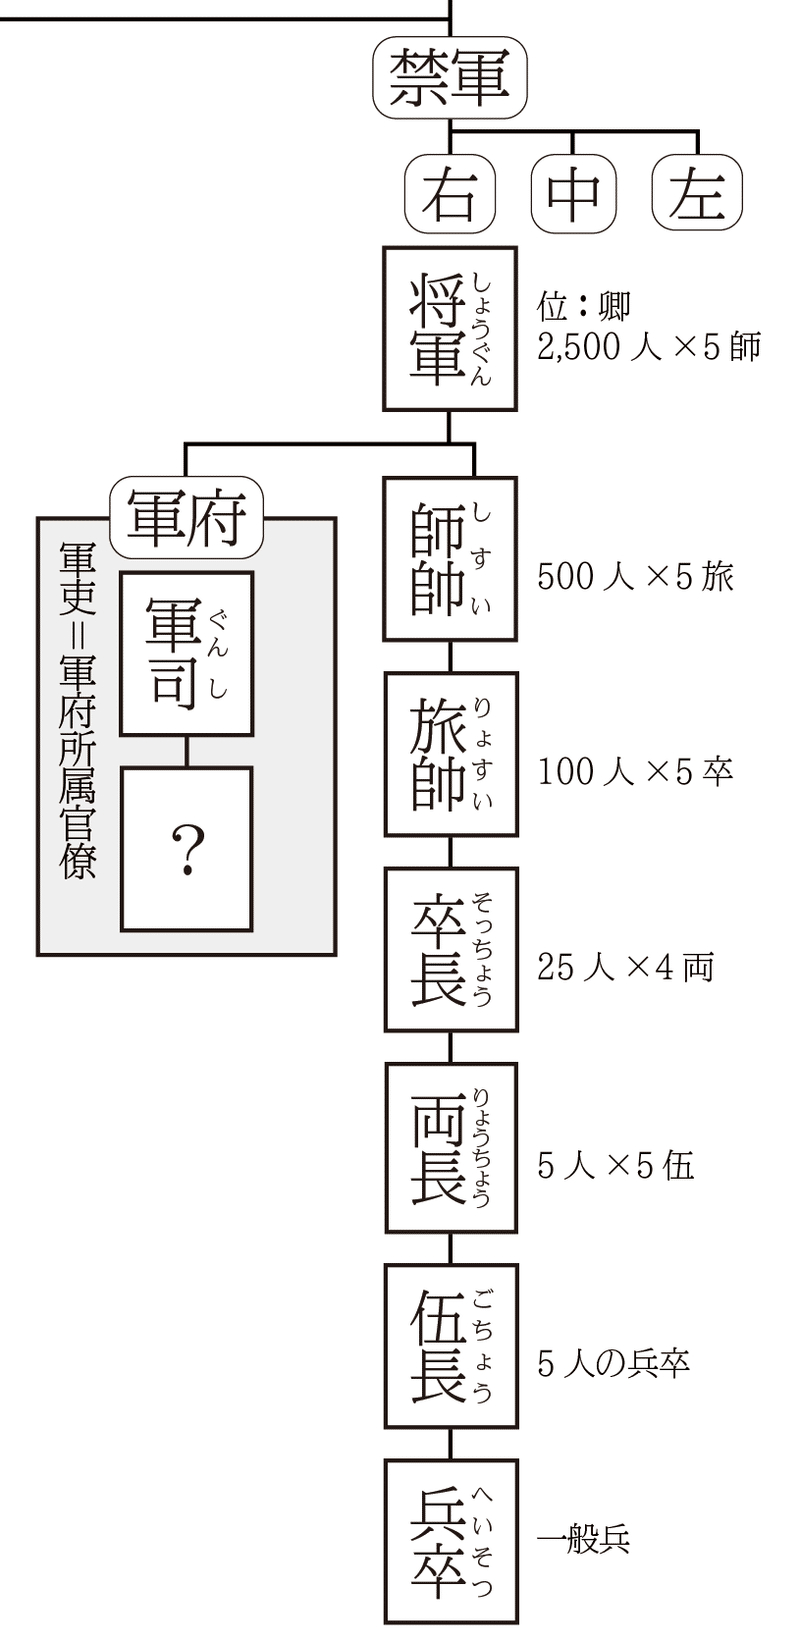 夏官組織図1